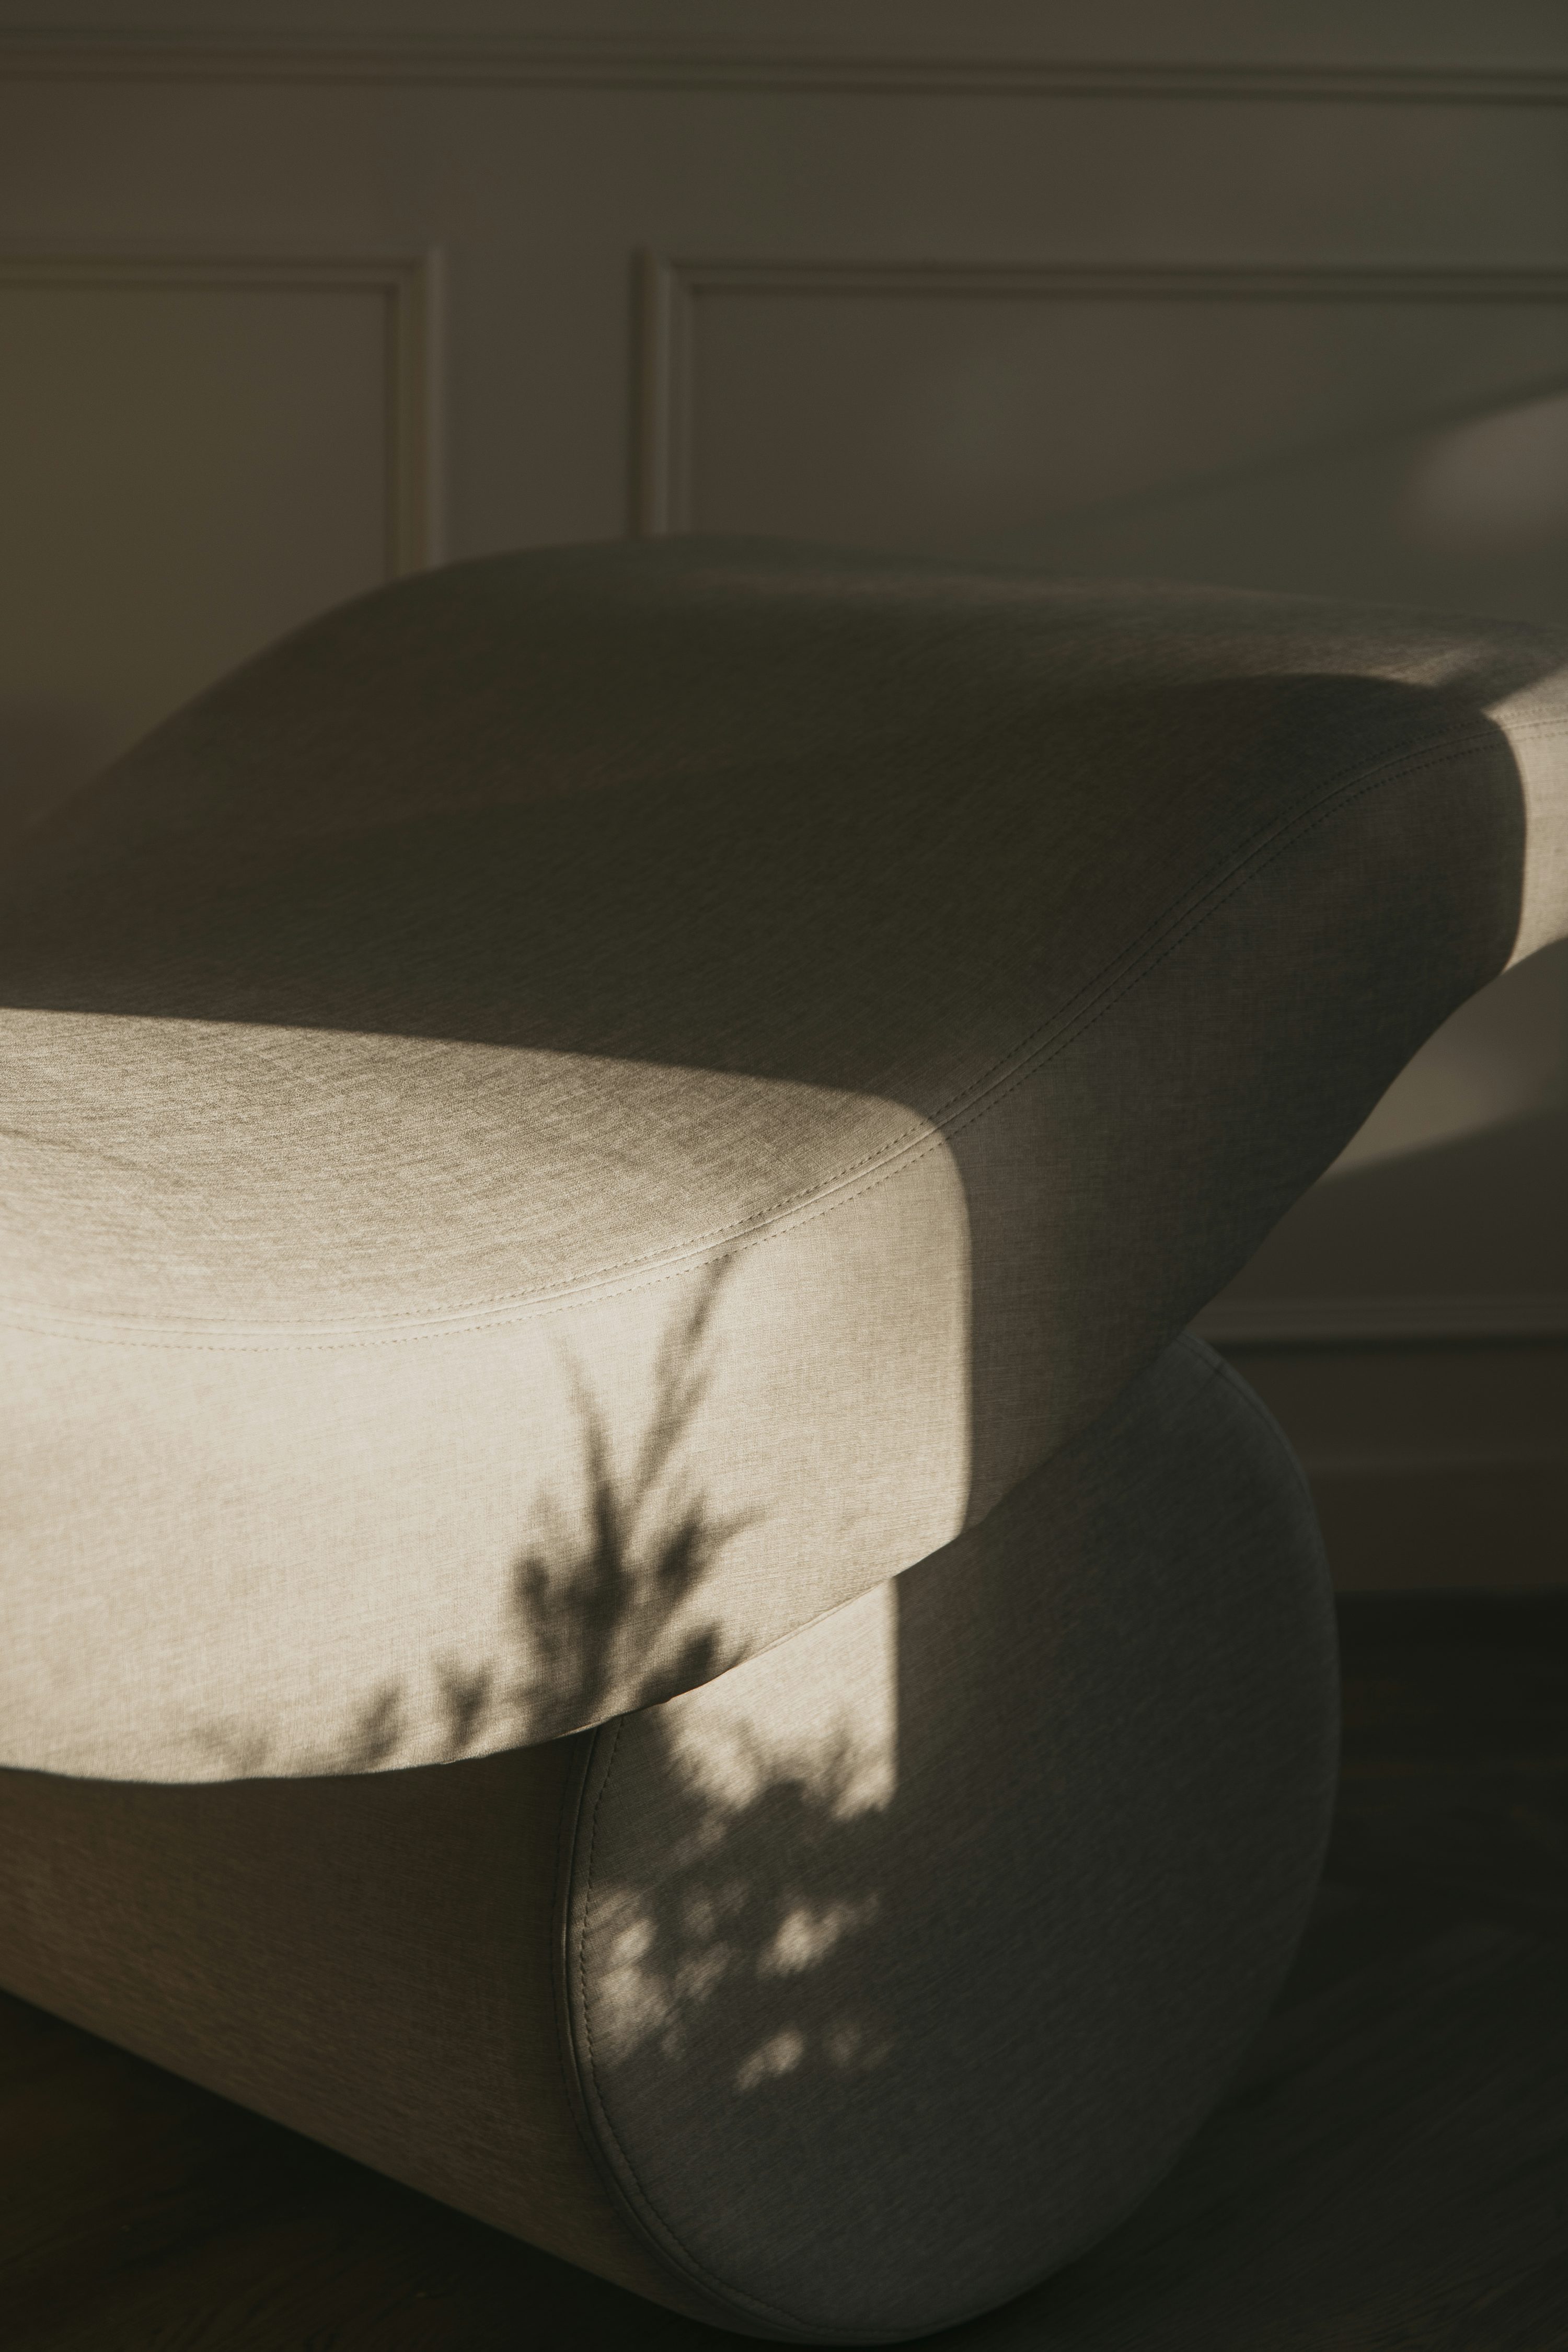 la sombra de una planta en el respaldo de una silla